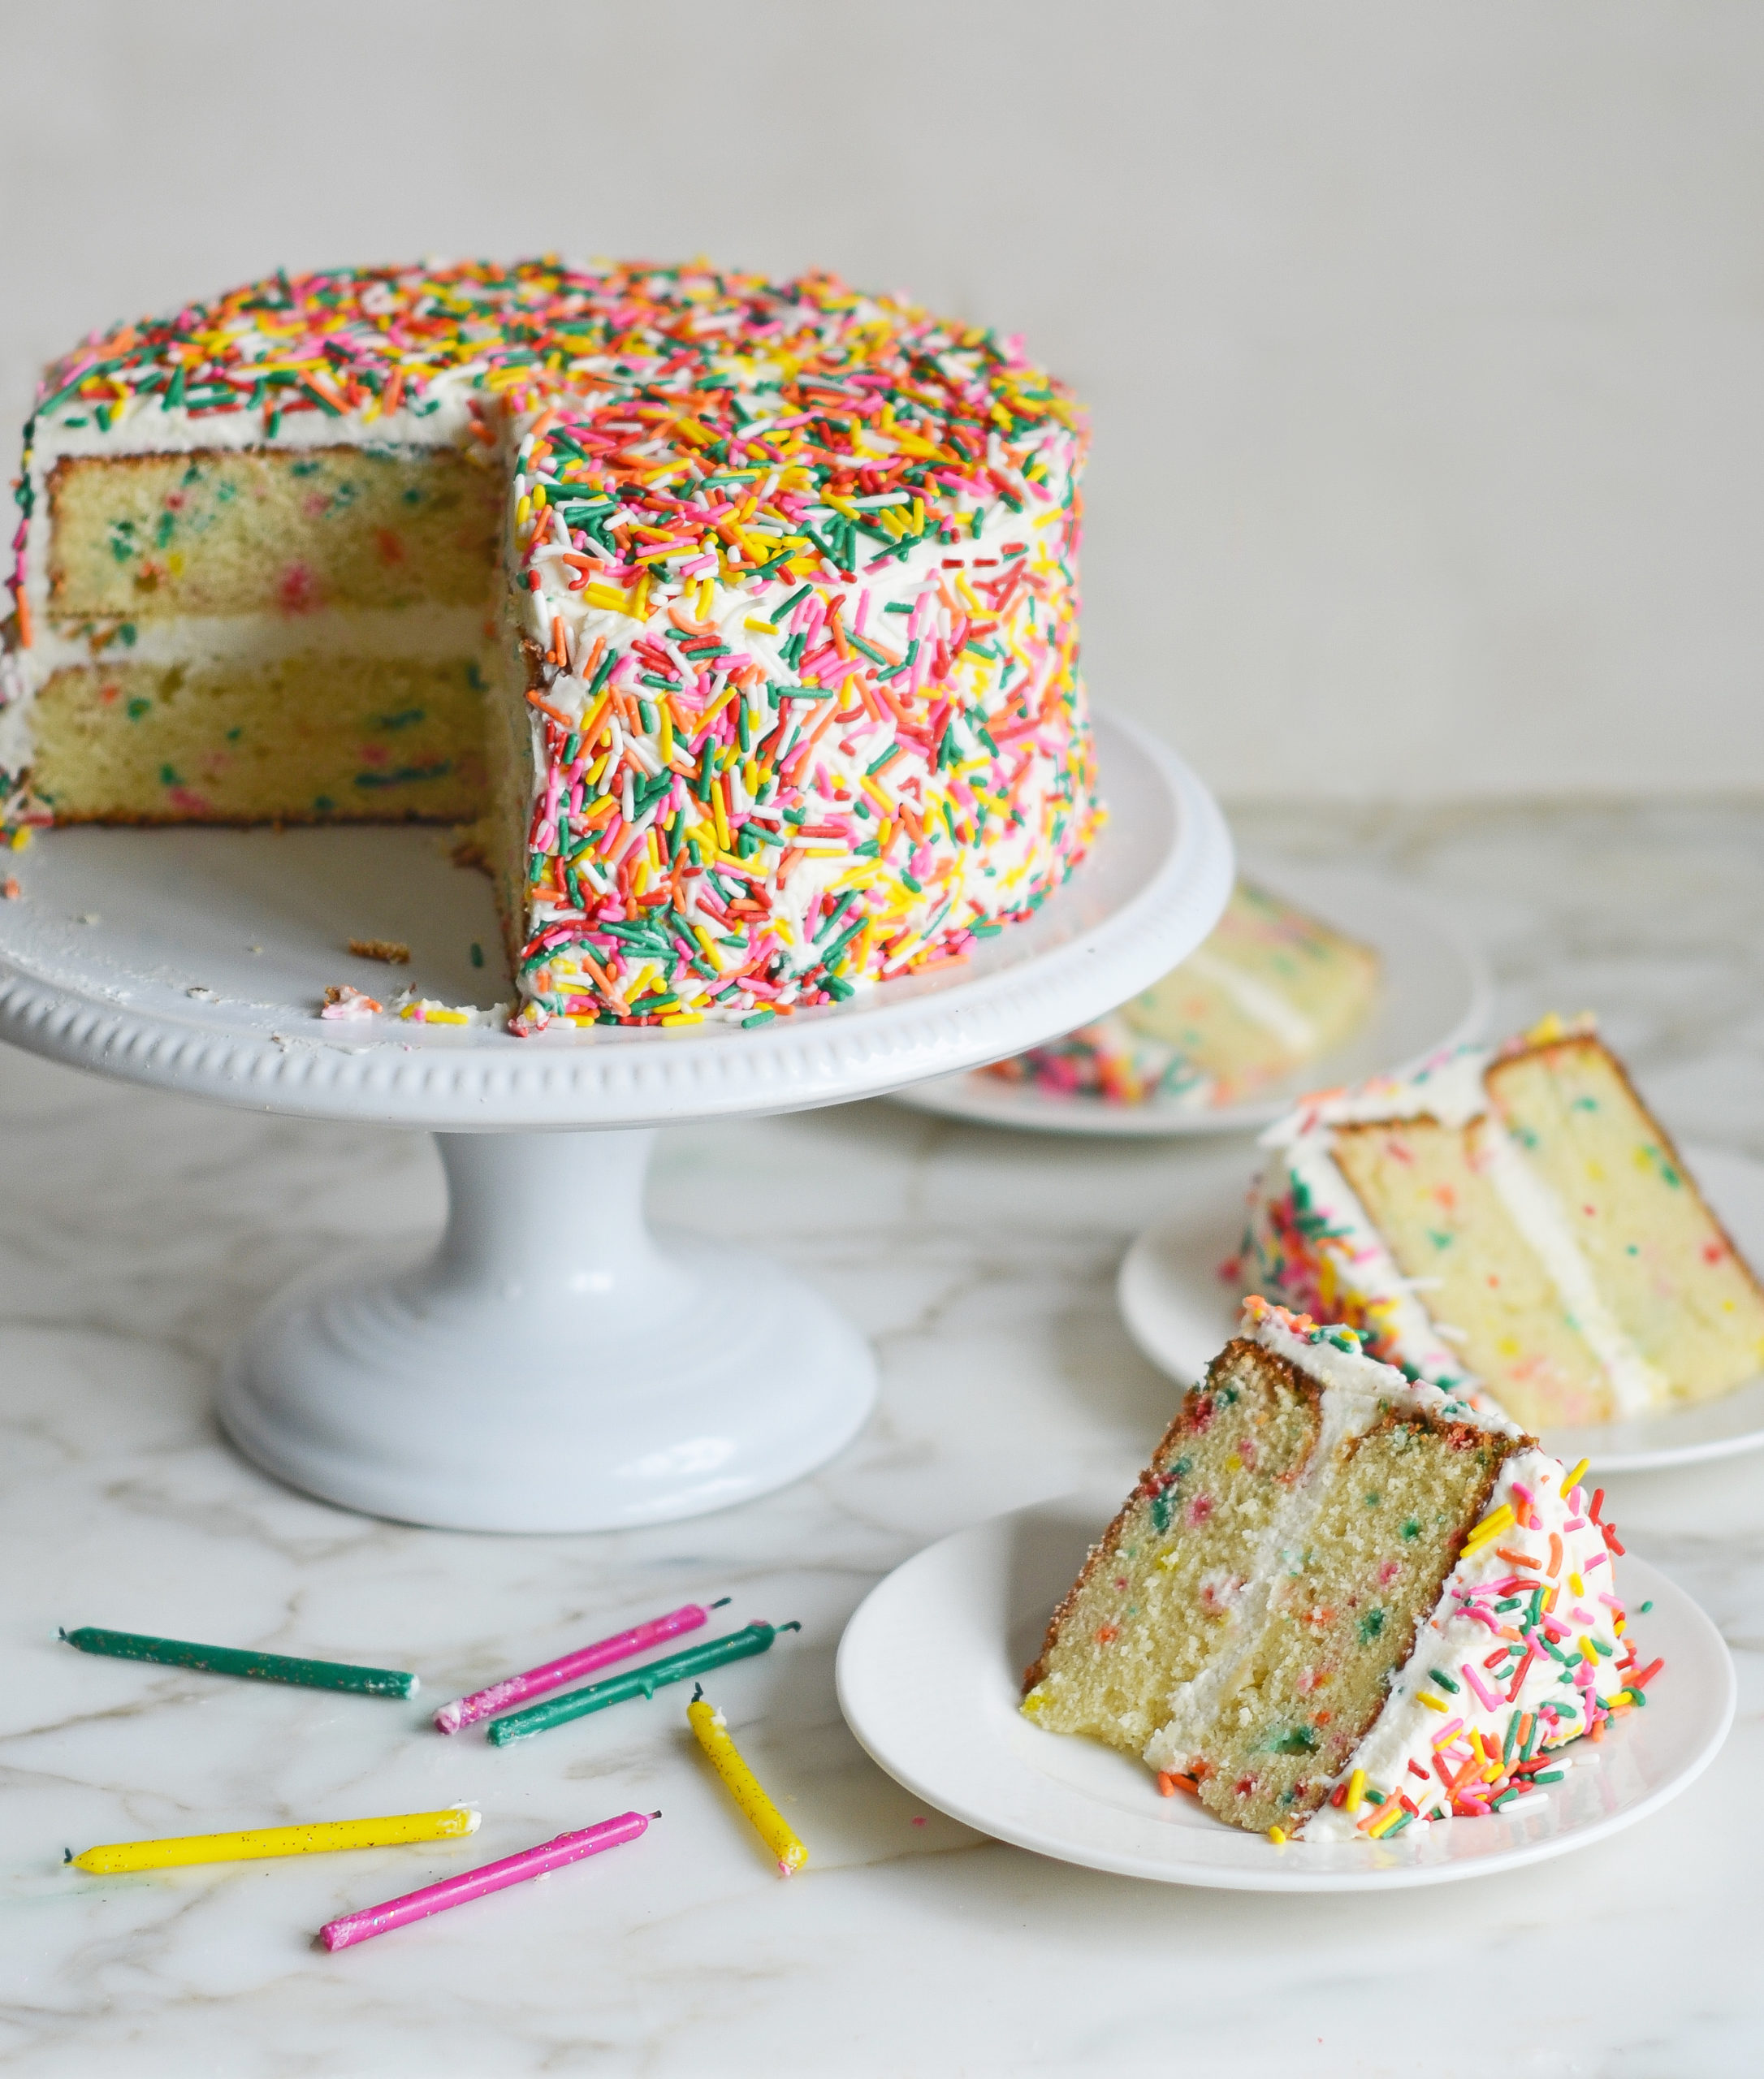 Designer Brand - Edible Icing Cake Wrap Set - 1